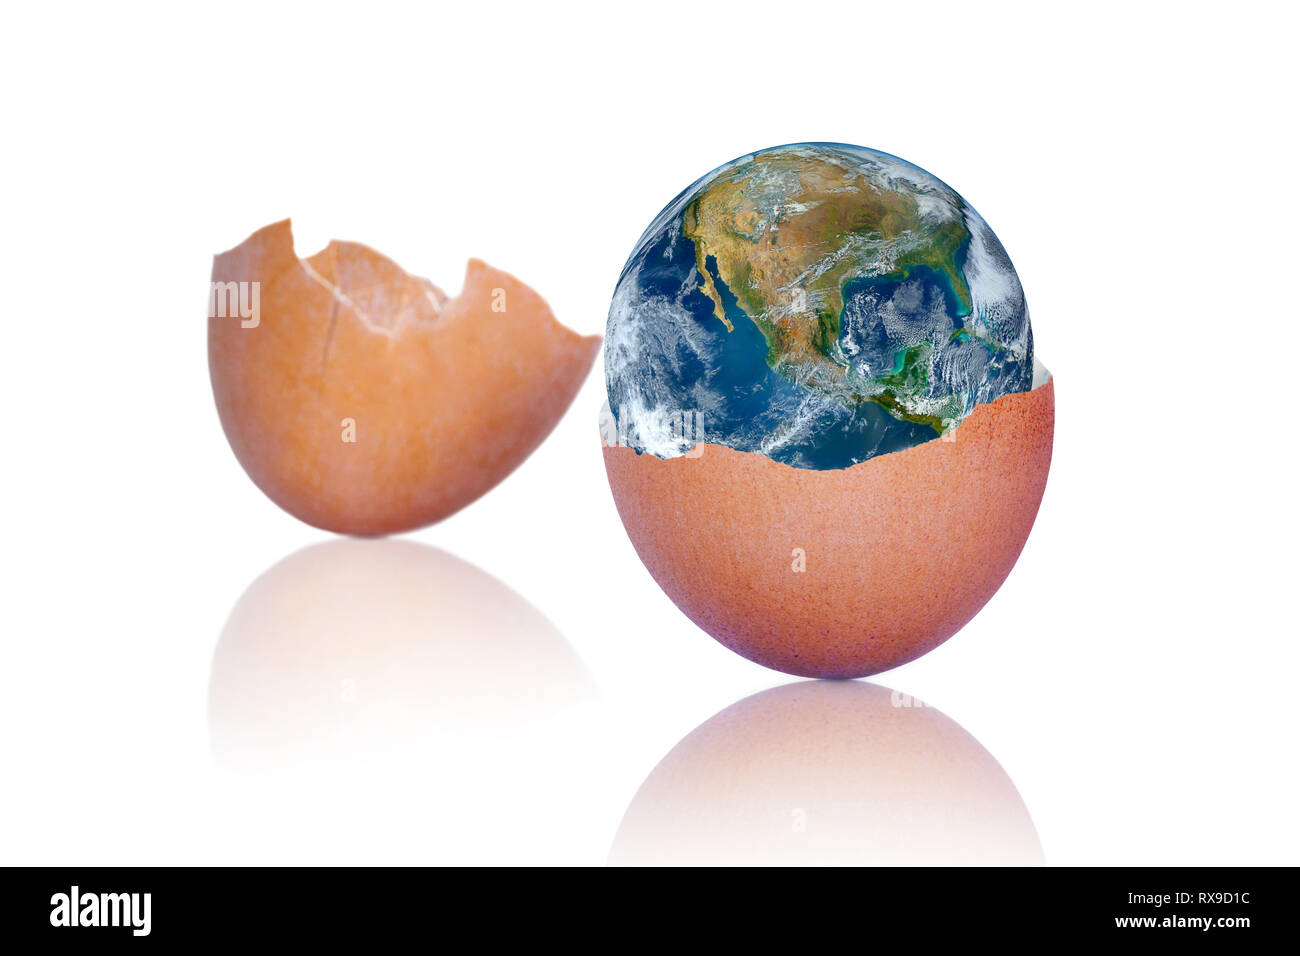 12.2005 brown egg montrant la naissance de notre planète terre à l'intérieur. Concept de notre fragile planète. Éléments de cette image fournie par la NASA. Banque D'Images